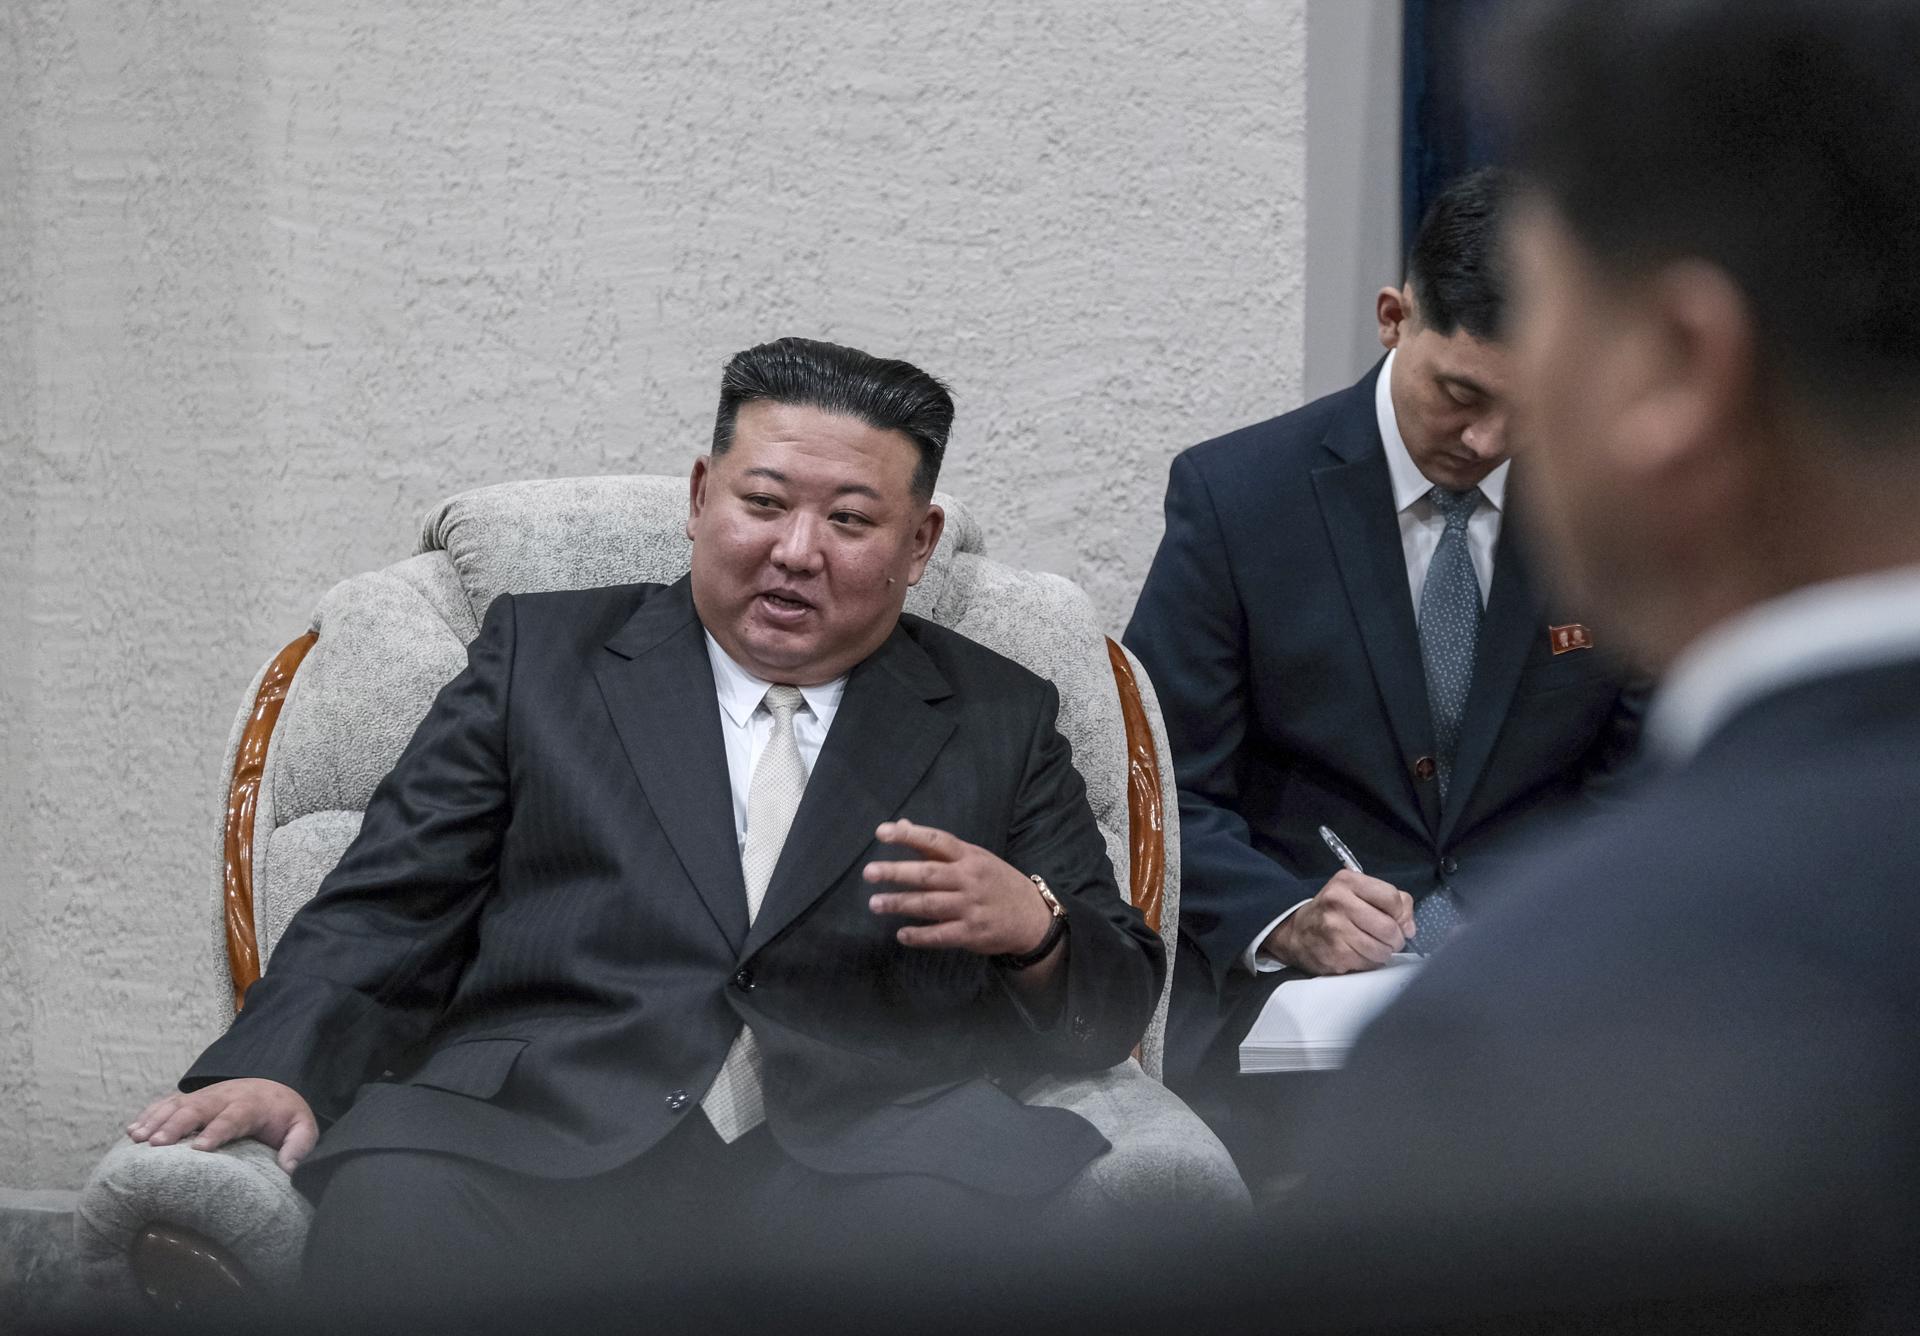 El líder norcoreano, Kim Jong-un, en una fotografía de archivo. EFE/Russian Ministry of Natural Resources and Ecology